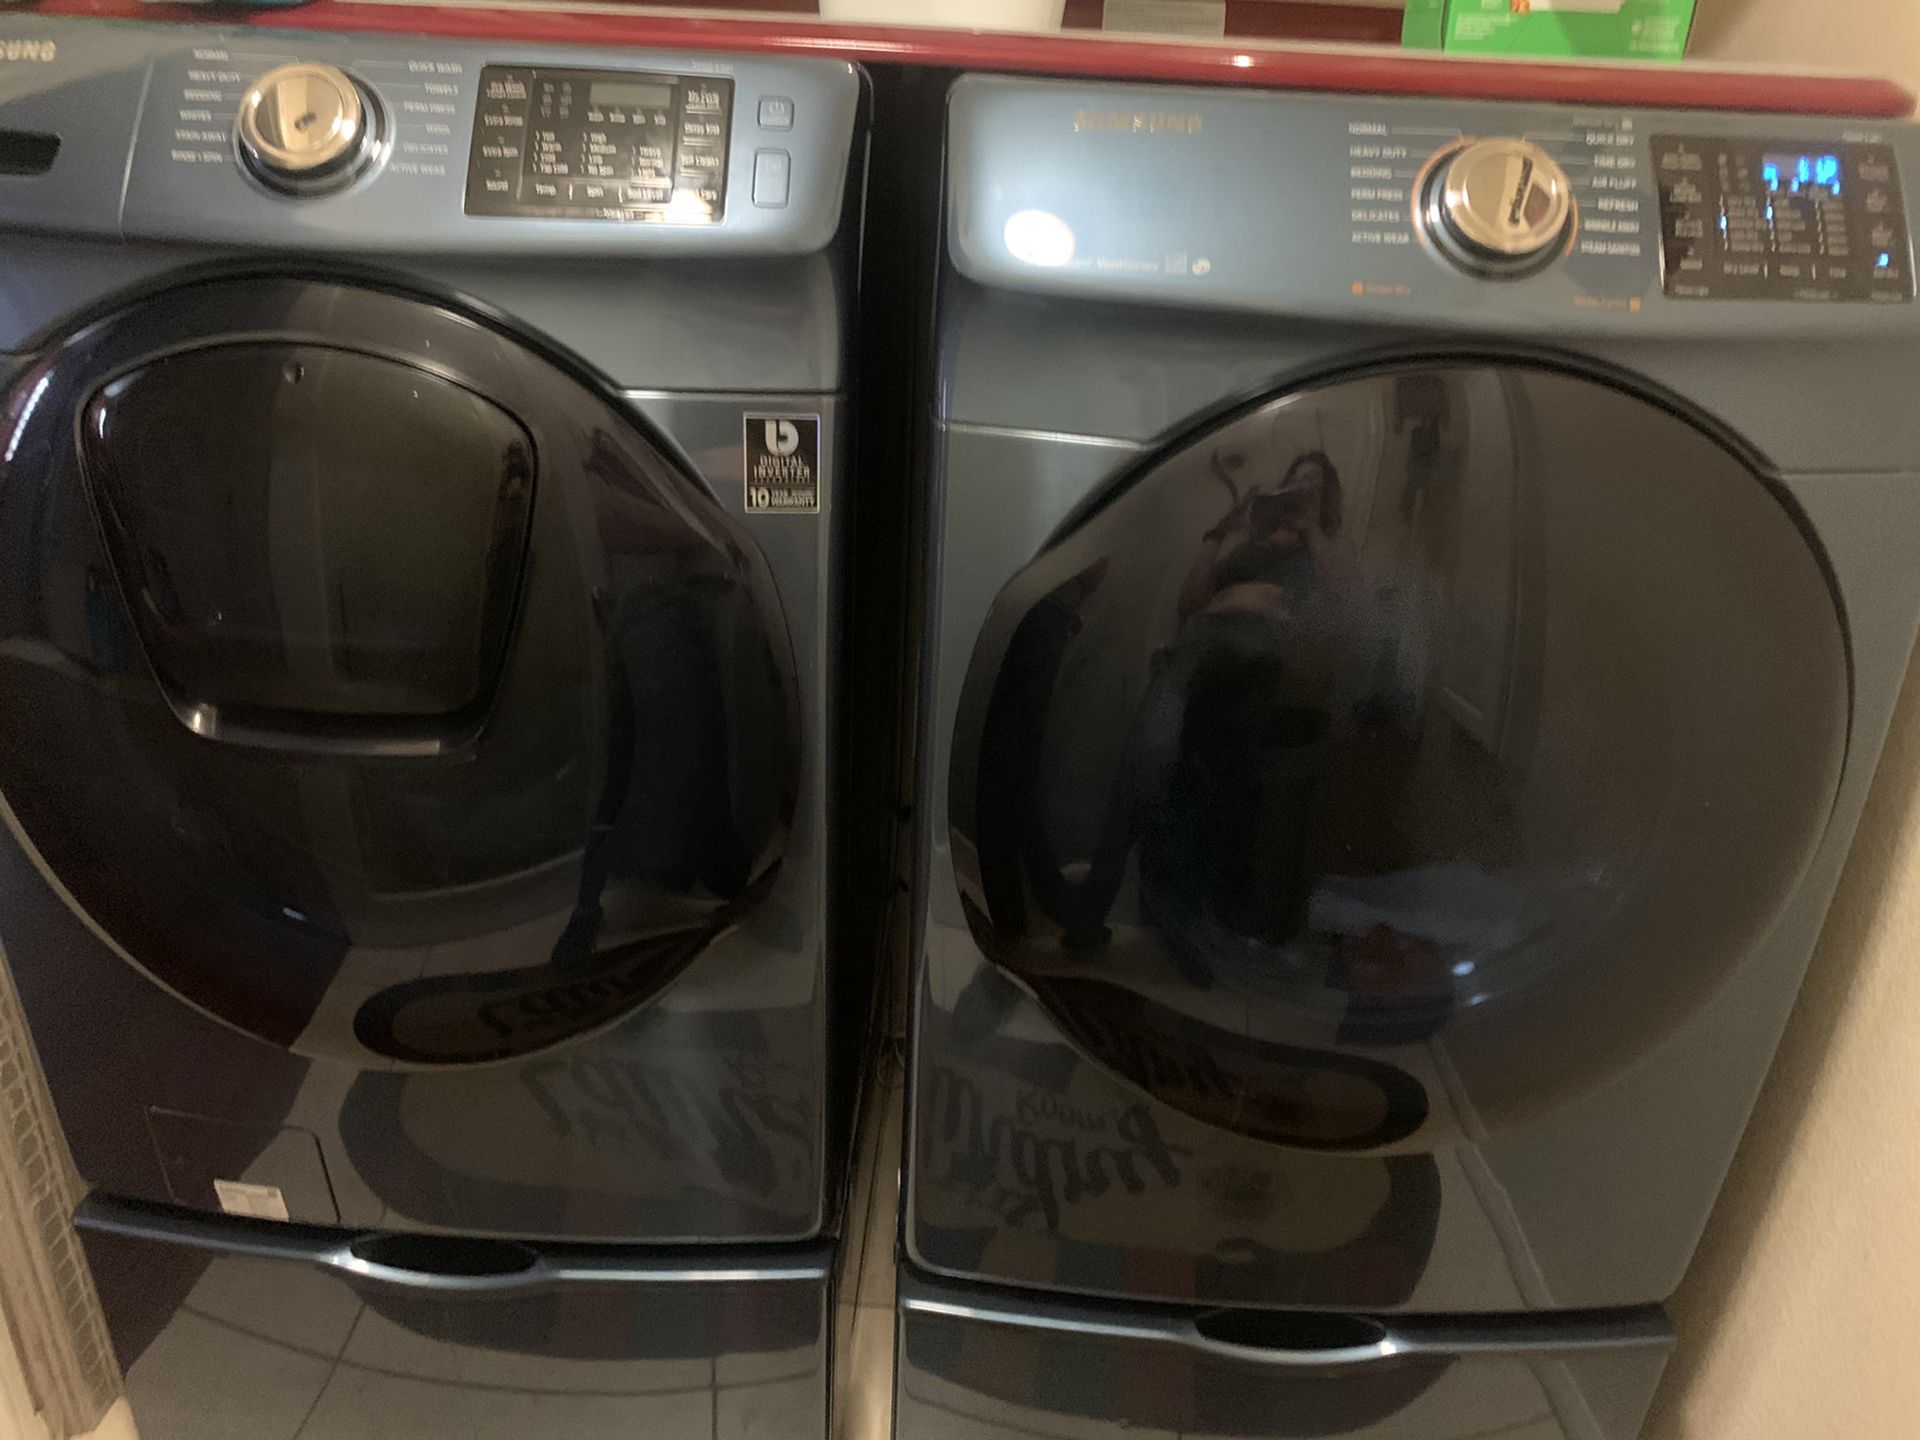 Samsung washer dryer set with pedestal